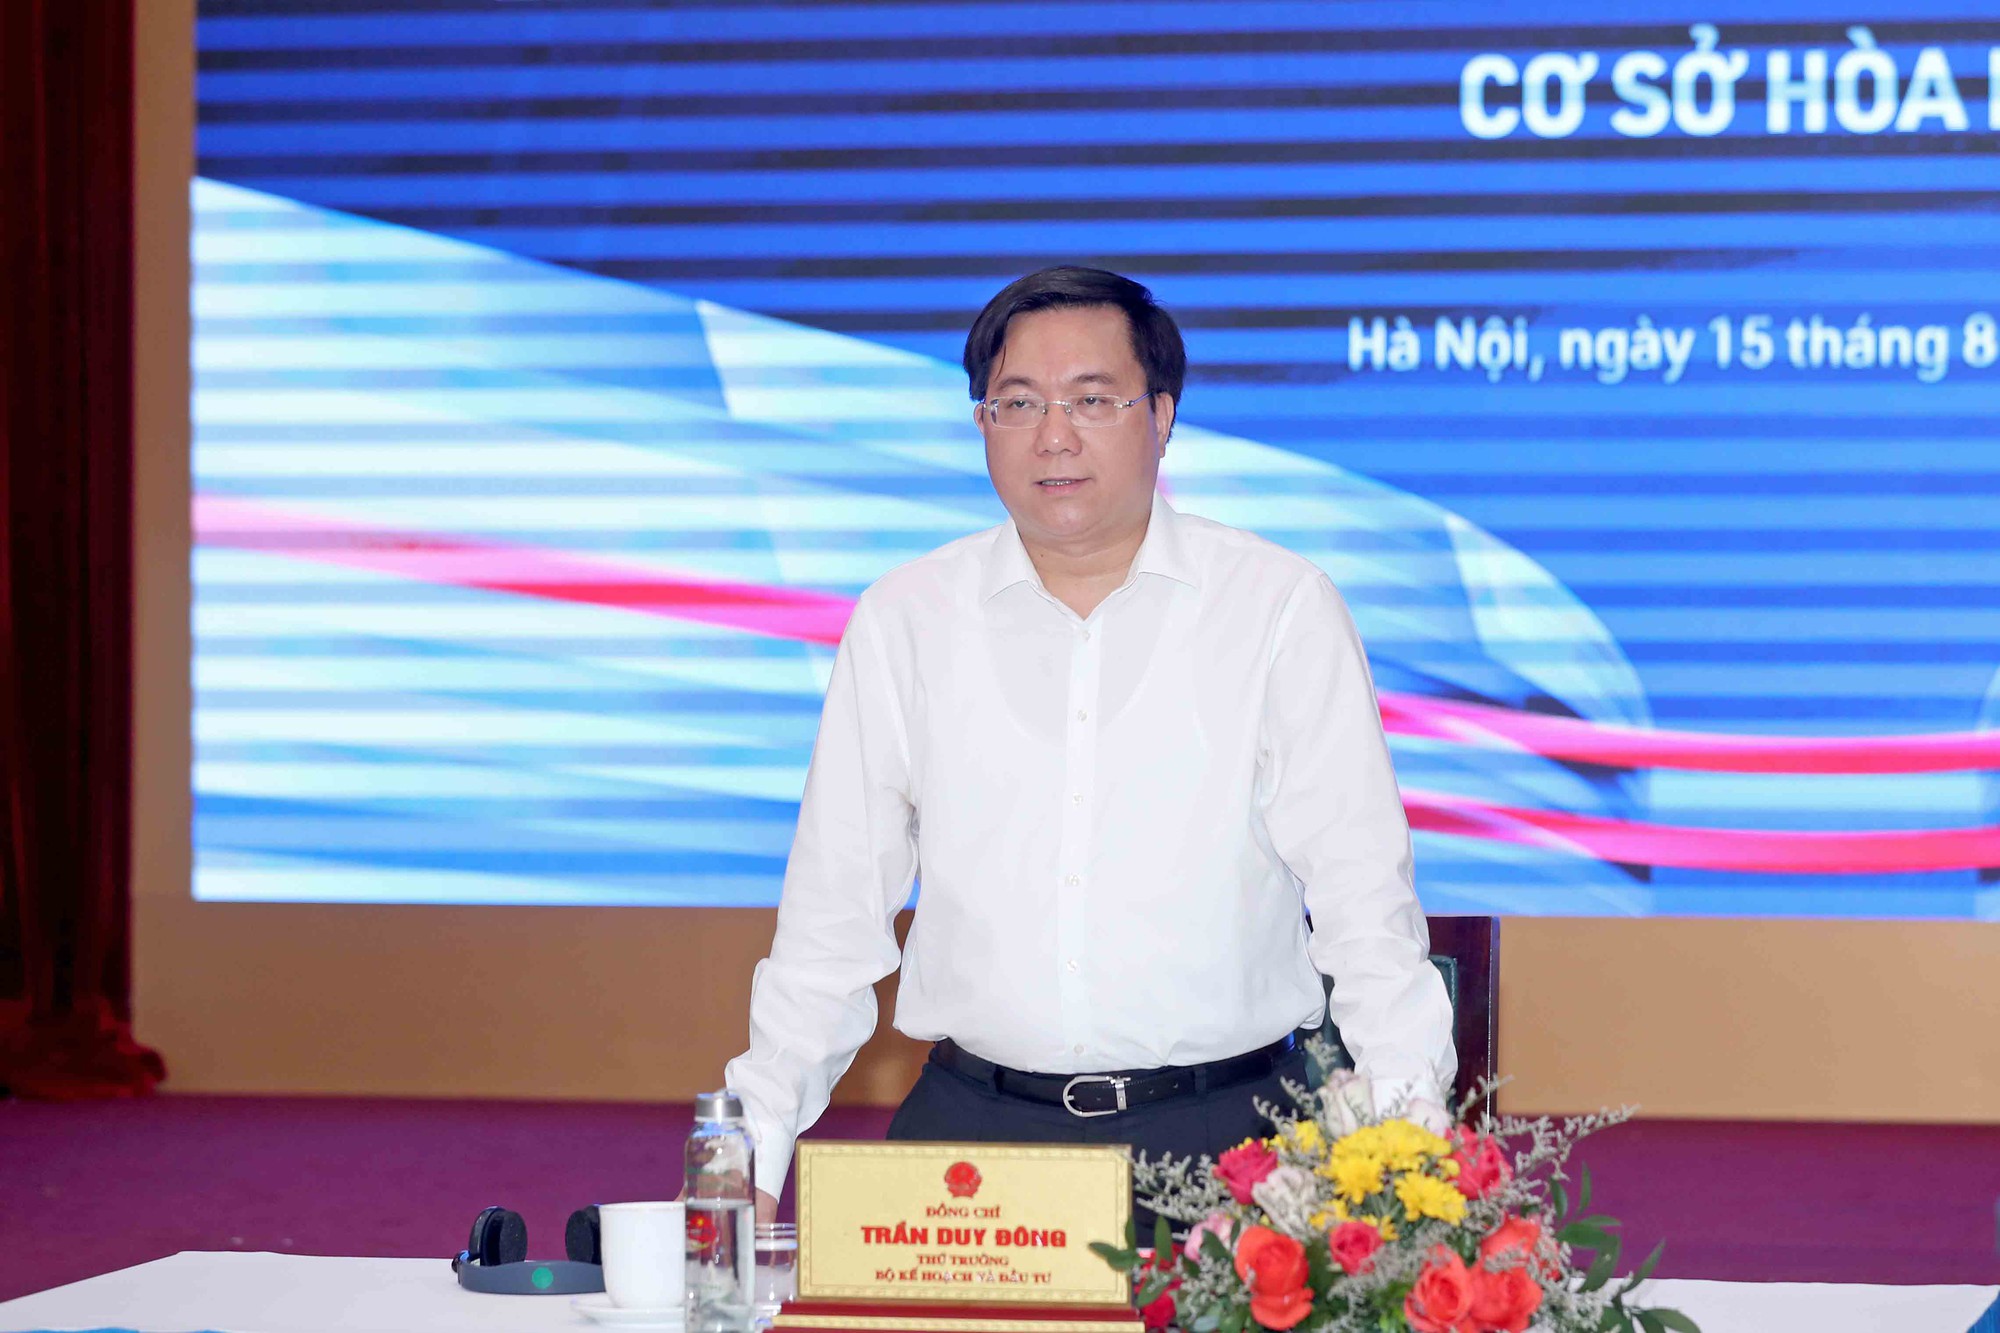 Bộ KH&ĐT kêu gọi hàng trăm công ty công nghệ hàng đầu Việt Nam và thế giới chia sẻ kinh nghiệm đổi mới - Ảnh 1.